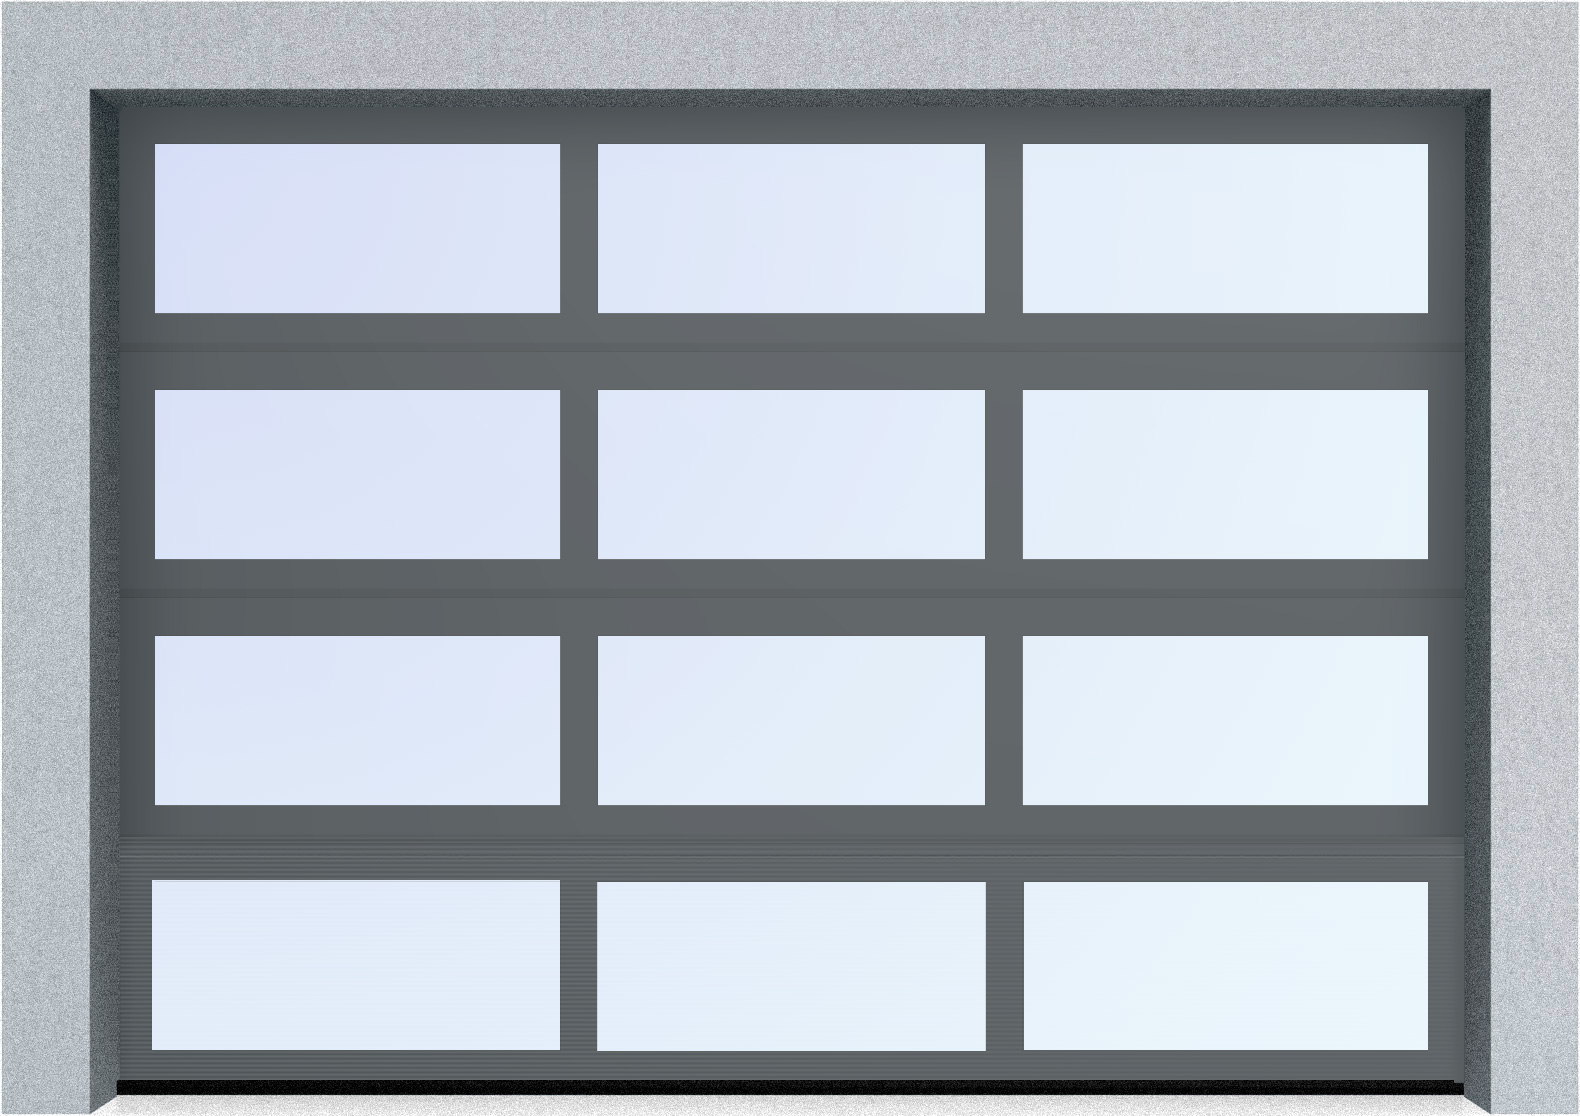  Секционные панорамные ворота серии AluTrend (АЛП) 5250х4500 нижняя панель стандартные цвета, фото 5 